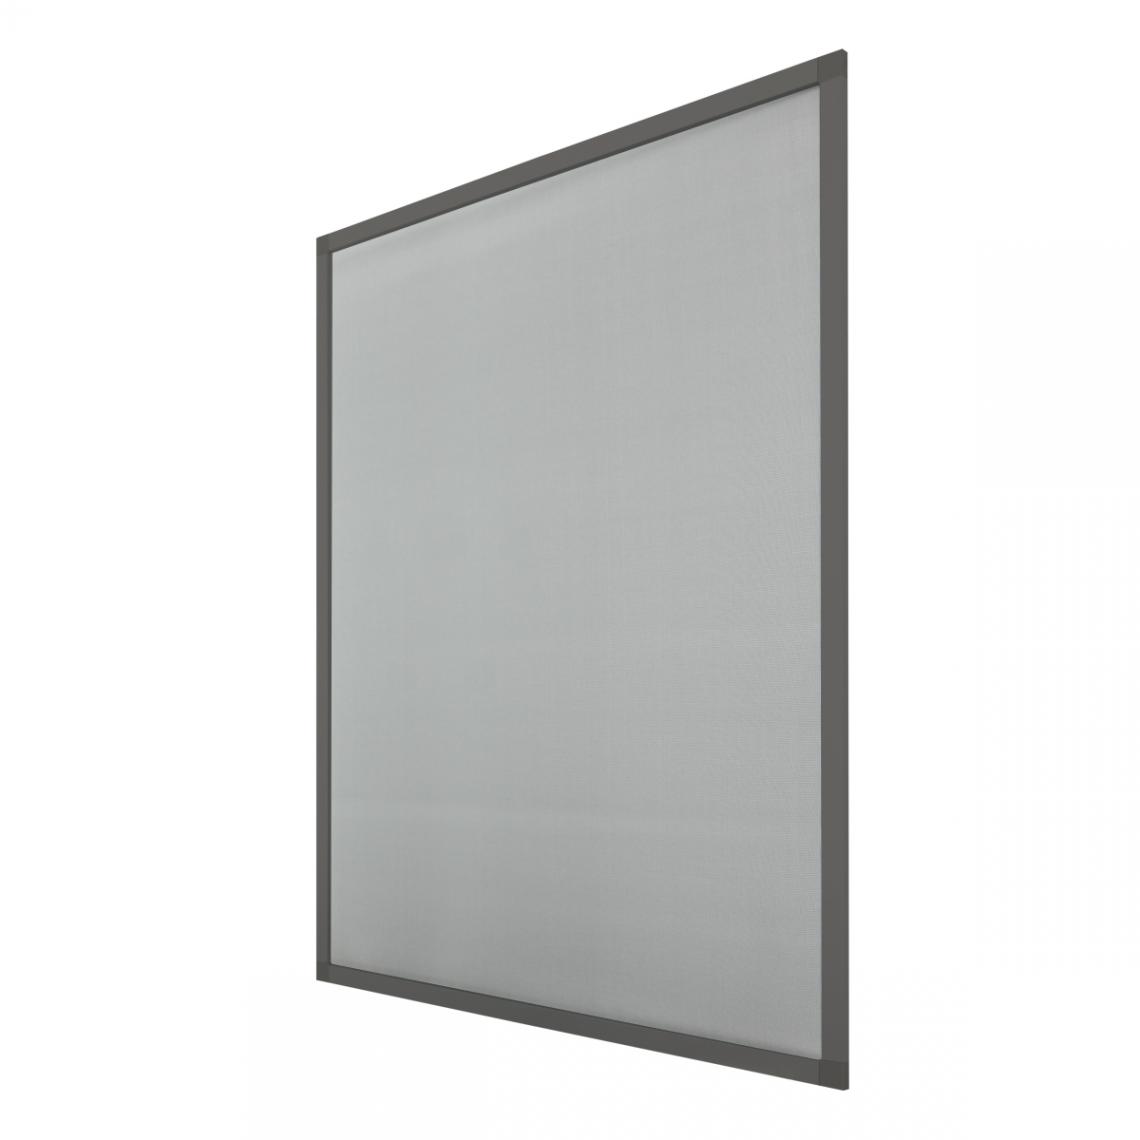 Ecd Germany - Moustiquaire pour fenêtre 120x140cm cadre aluminium gris protection insectes - Moustiquaire Fenêtre